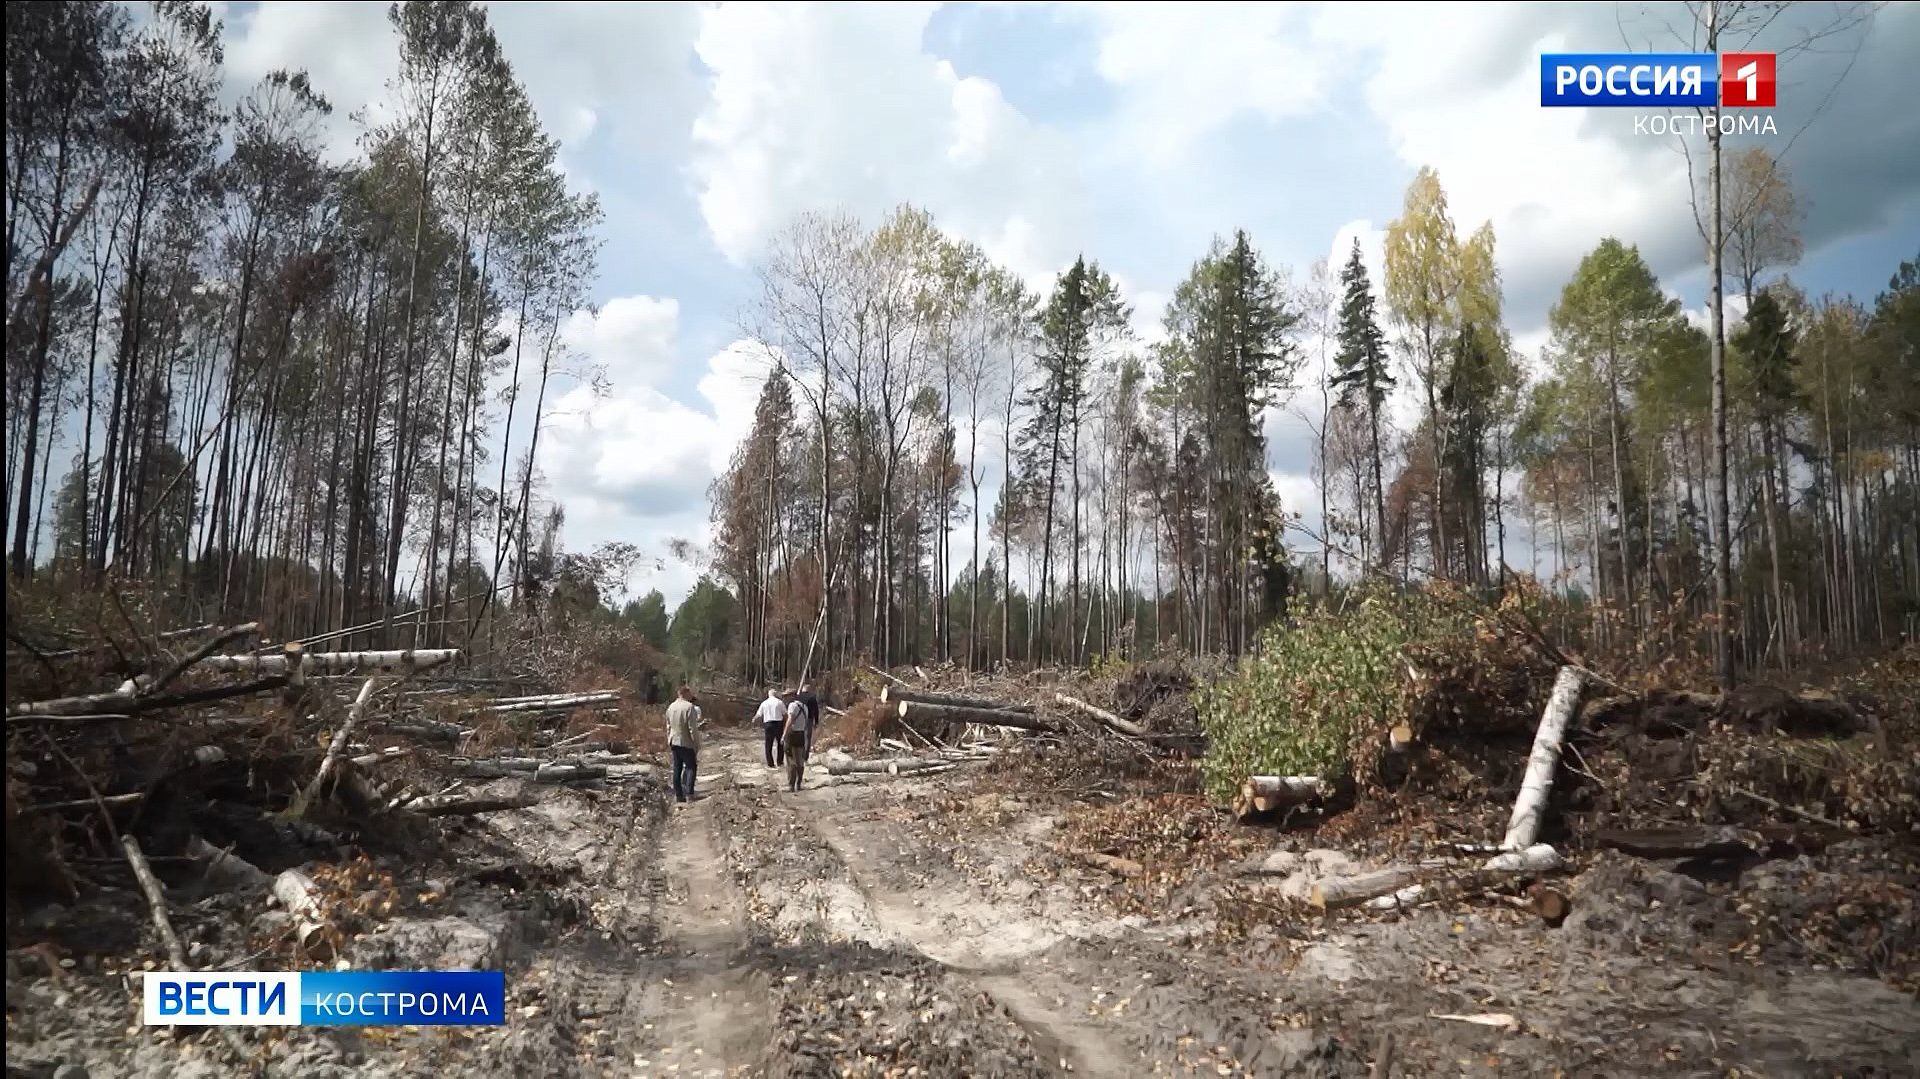 Семь лесных пожаров за полтора месяца потушили в Шарье